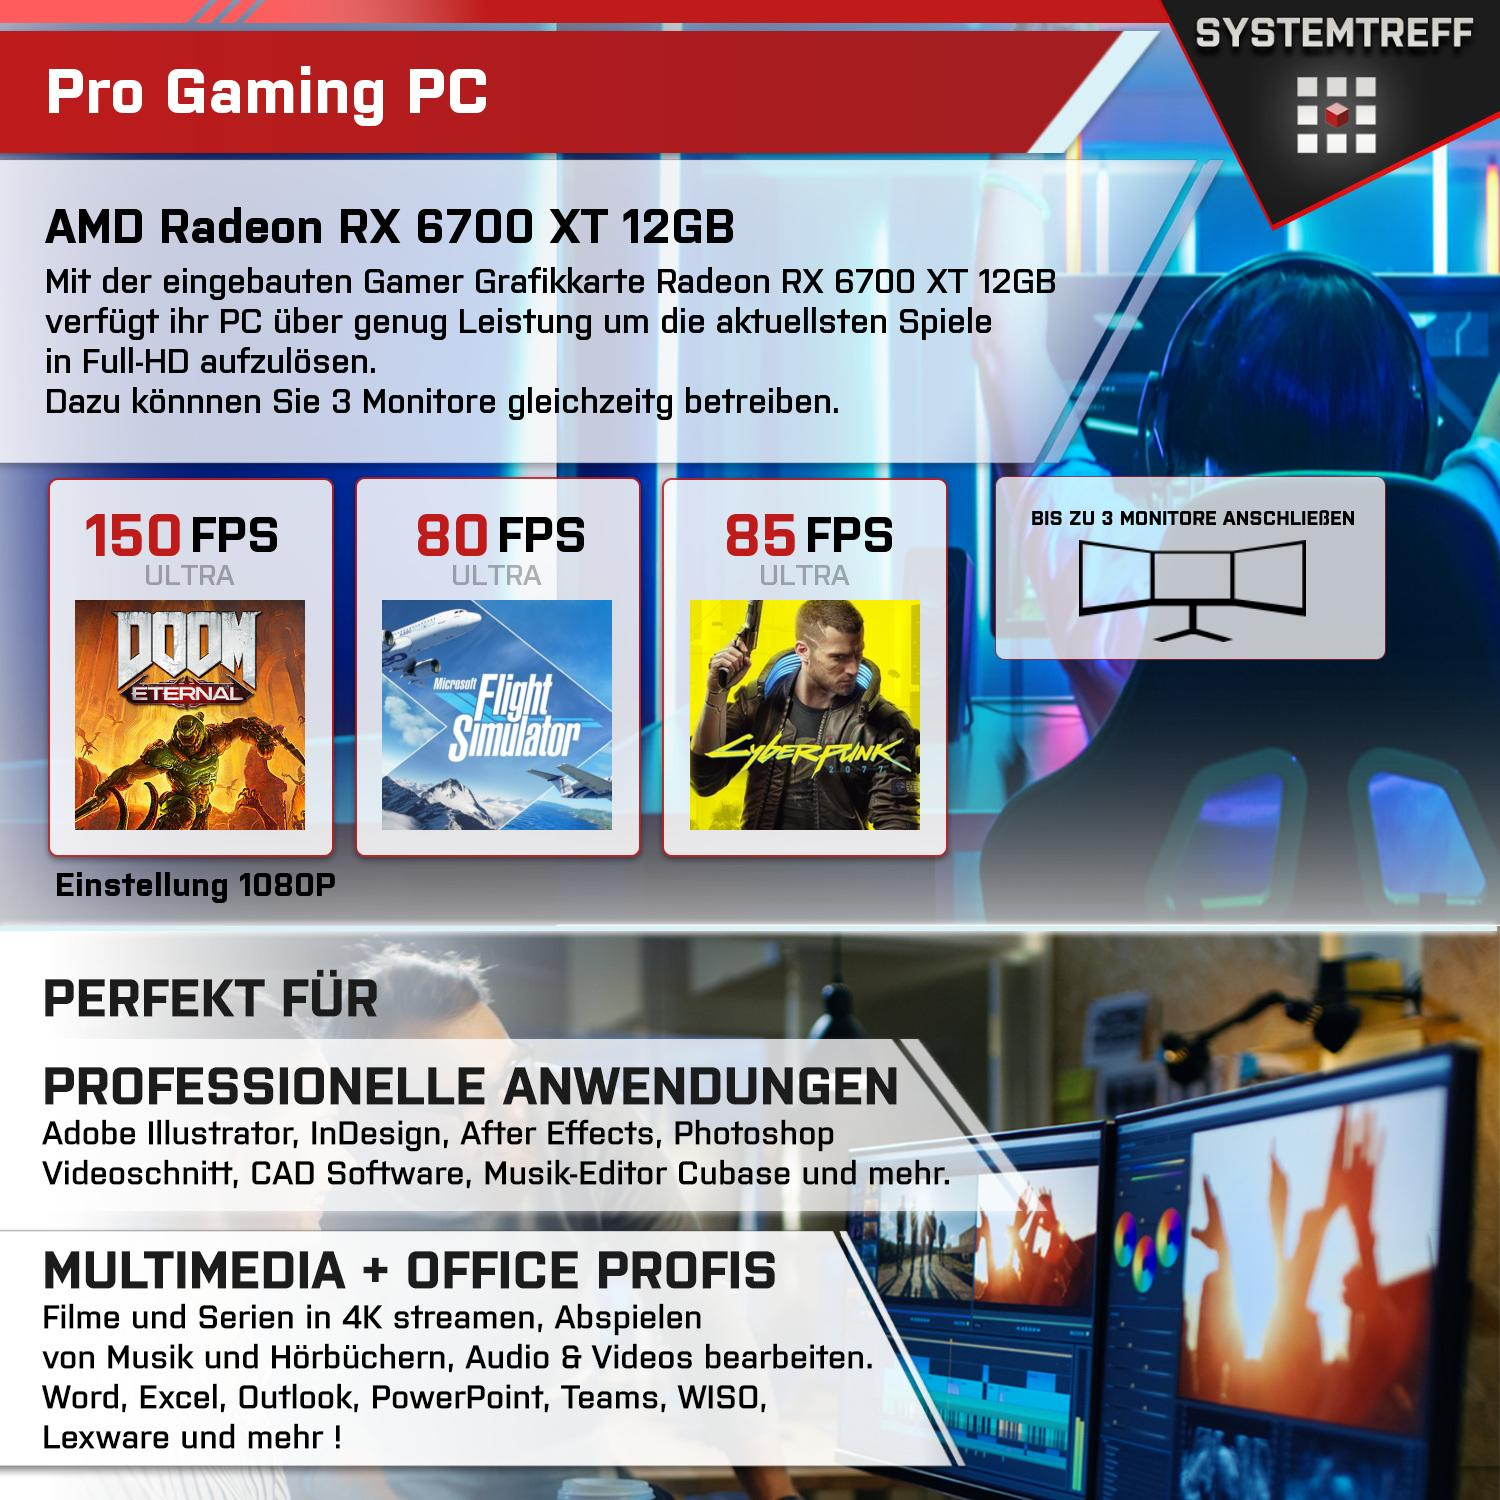 SYSTEMTREFF Gaming Komplett RX 12 RAM, 1000 32 5 XT Radeon 6700 PC GB Komplett AMD 7600X, 12GB GDDR6, mit 7600X GB GB Ryzen Prozessor, mSSD, AMD